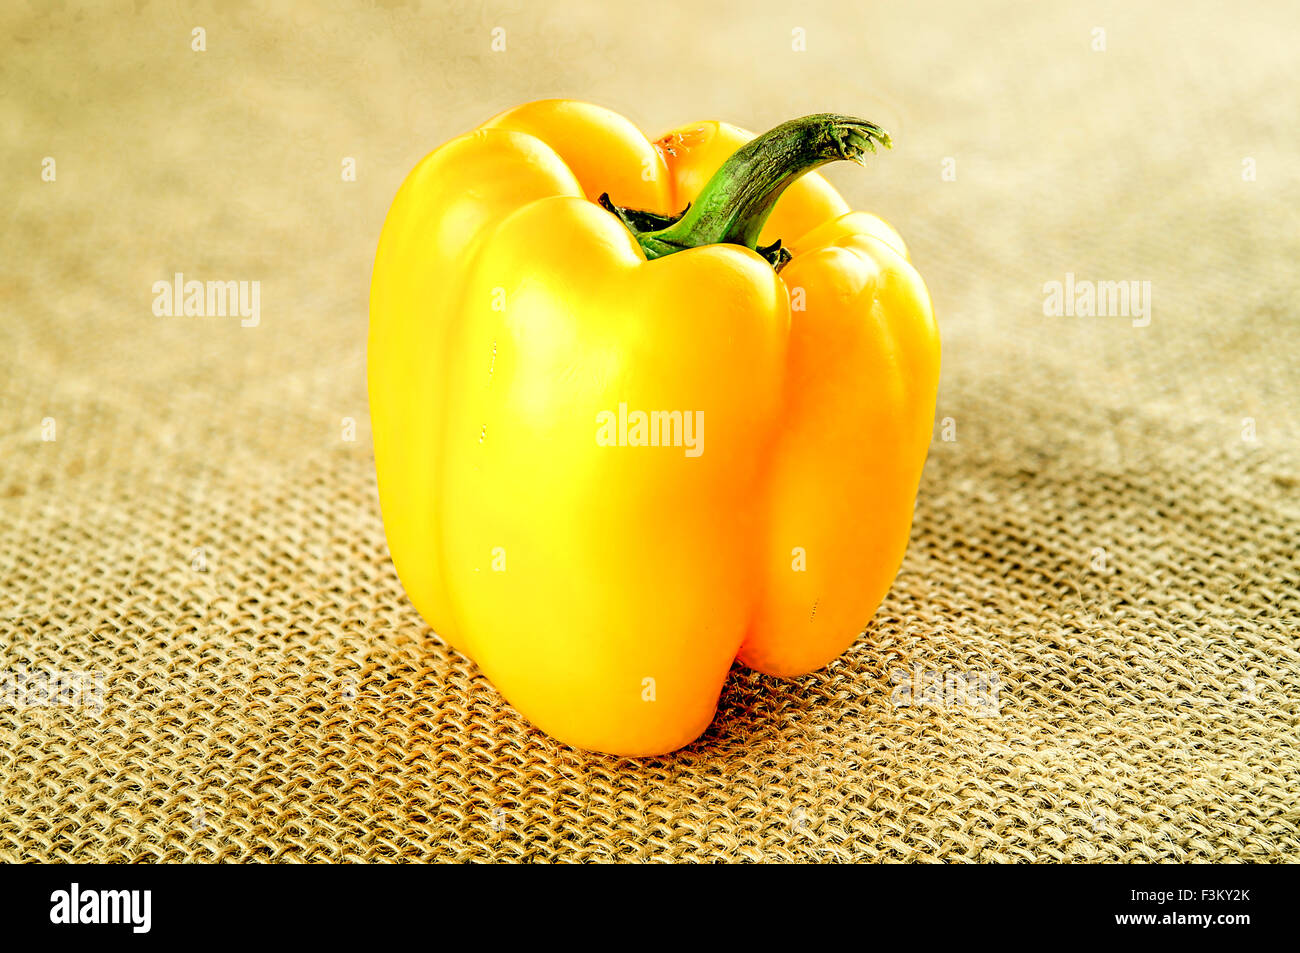 Farm Fresh organic poivron jaune sur sac en toile de jute Banque D'Images